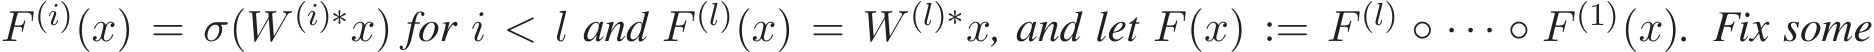 F (i)(x) = σ(W (i)∗x) for i < l and F (l)(x) = W (l)∗x, and let F(x) := F (l) ◦ · · · ◦ F (1)(x). Fix some